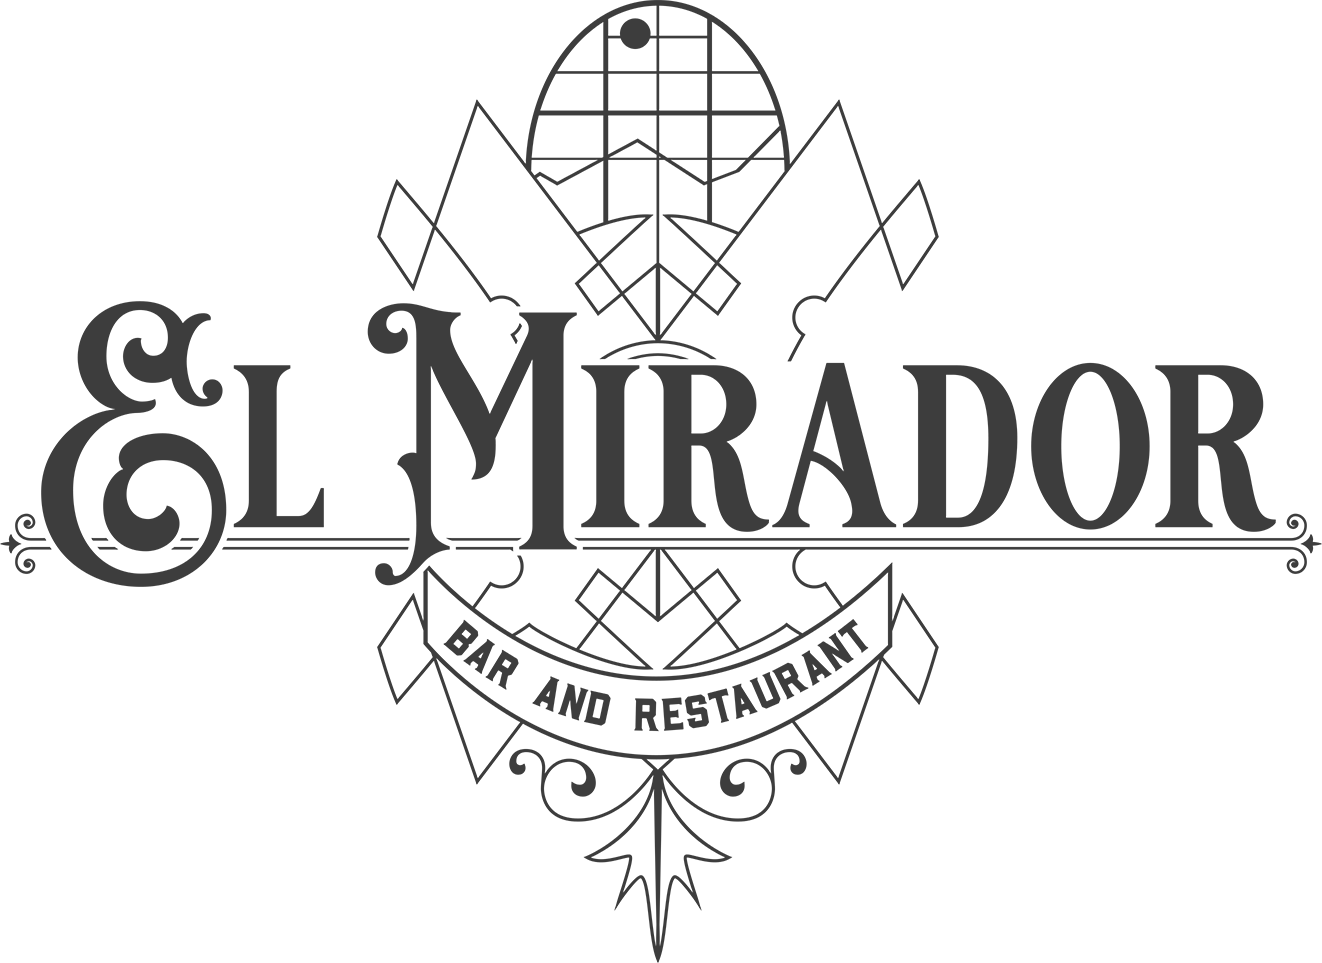 El Mirador-logo-final